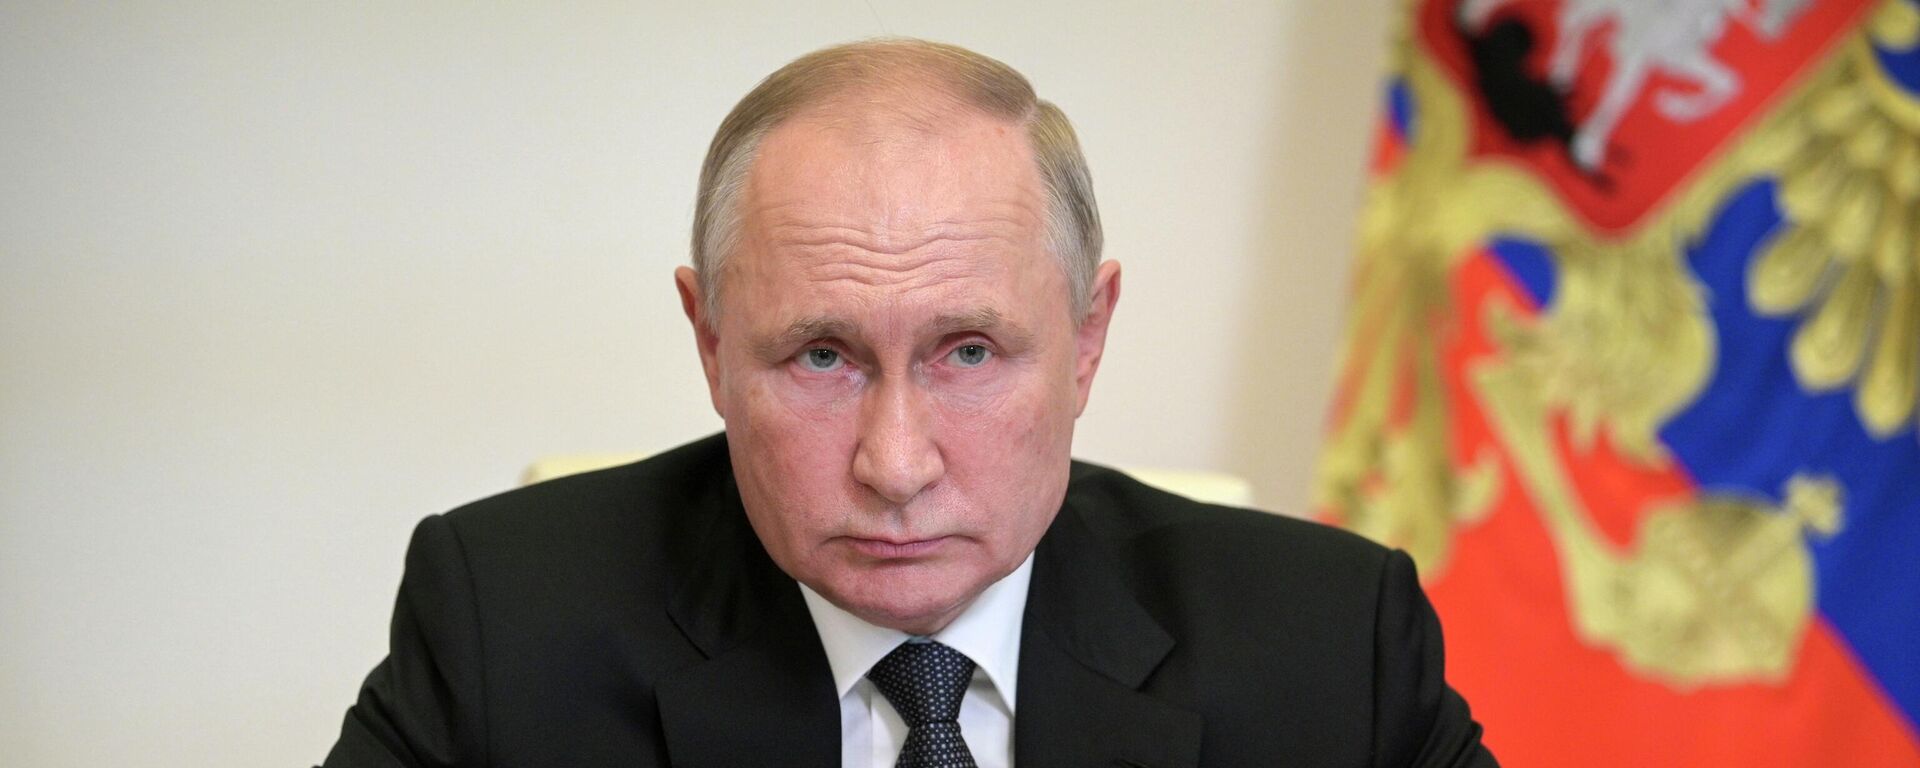 El presidente de Rusia Vladímir Putin - Sputnik Mundo, 1920, 24.11.2021